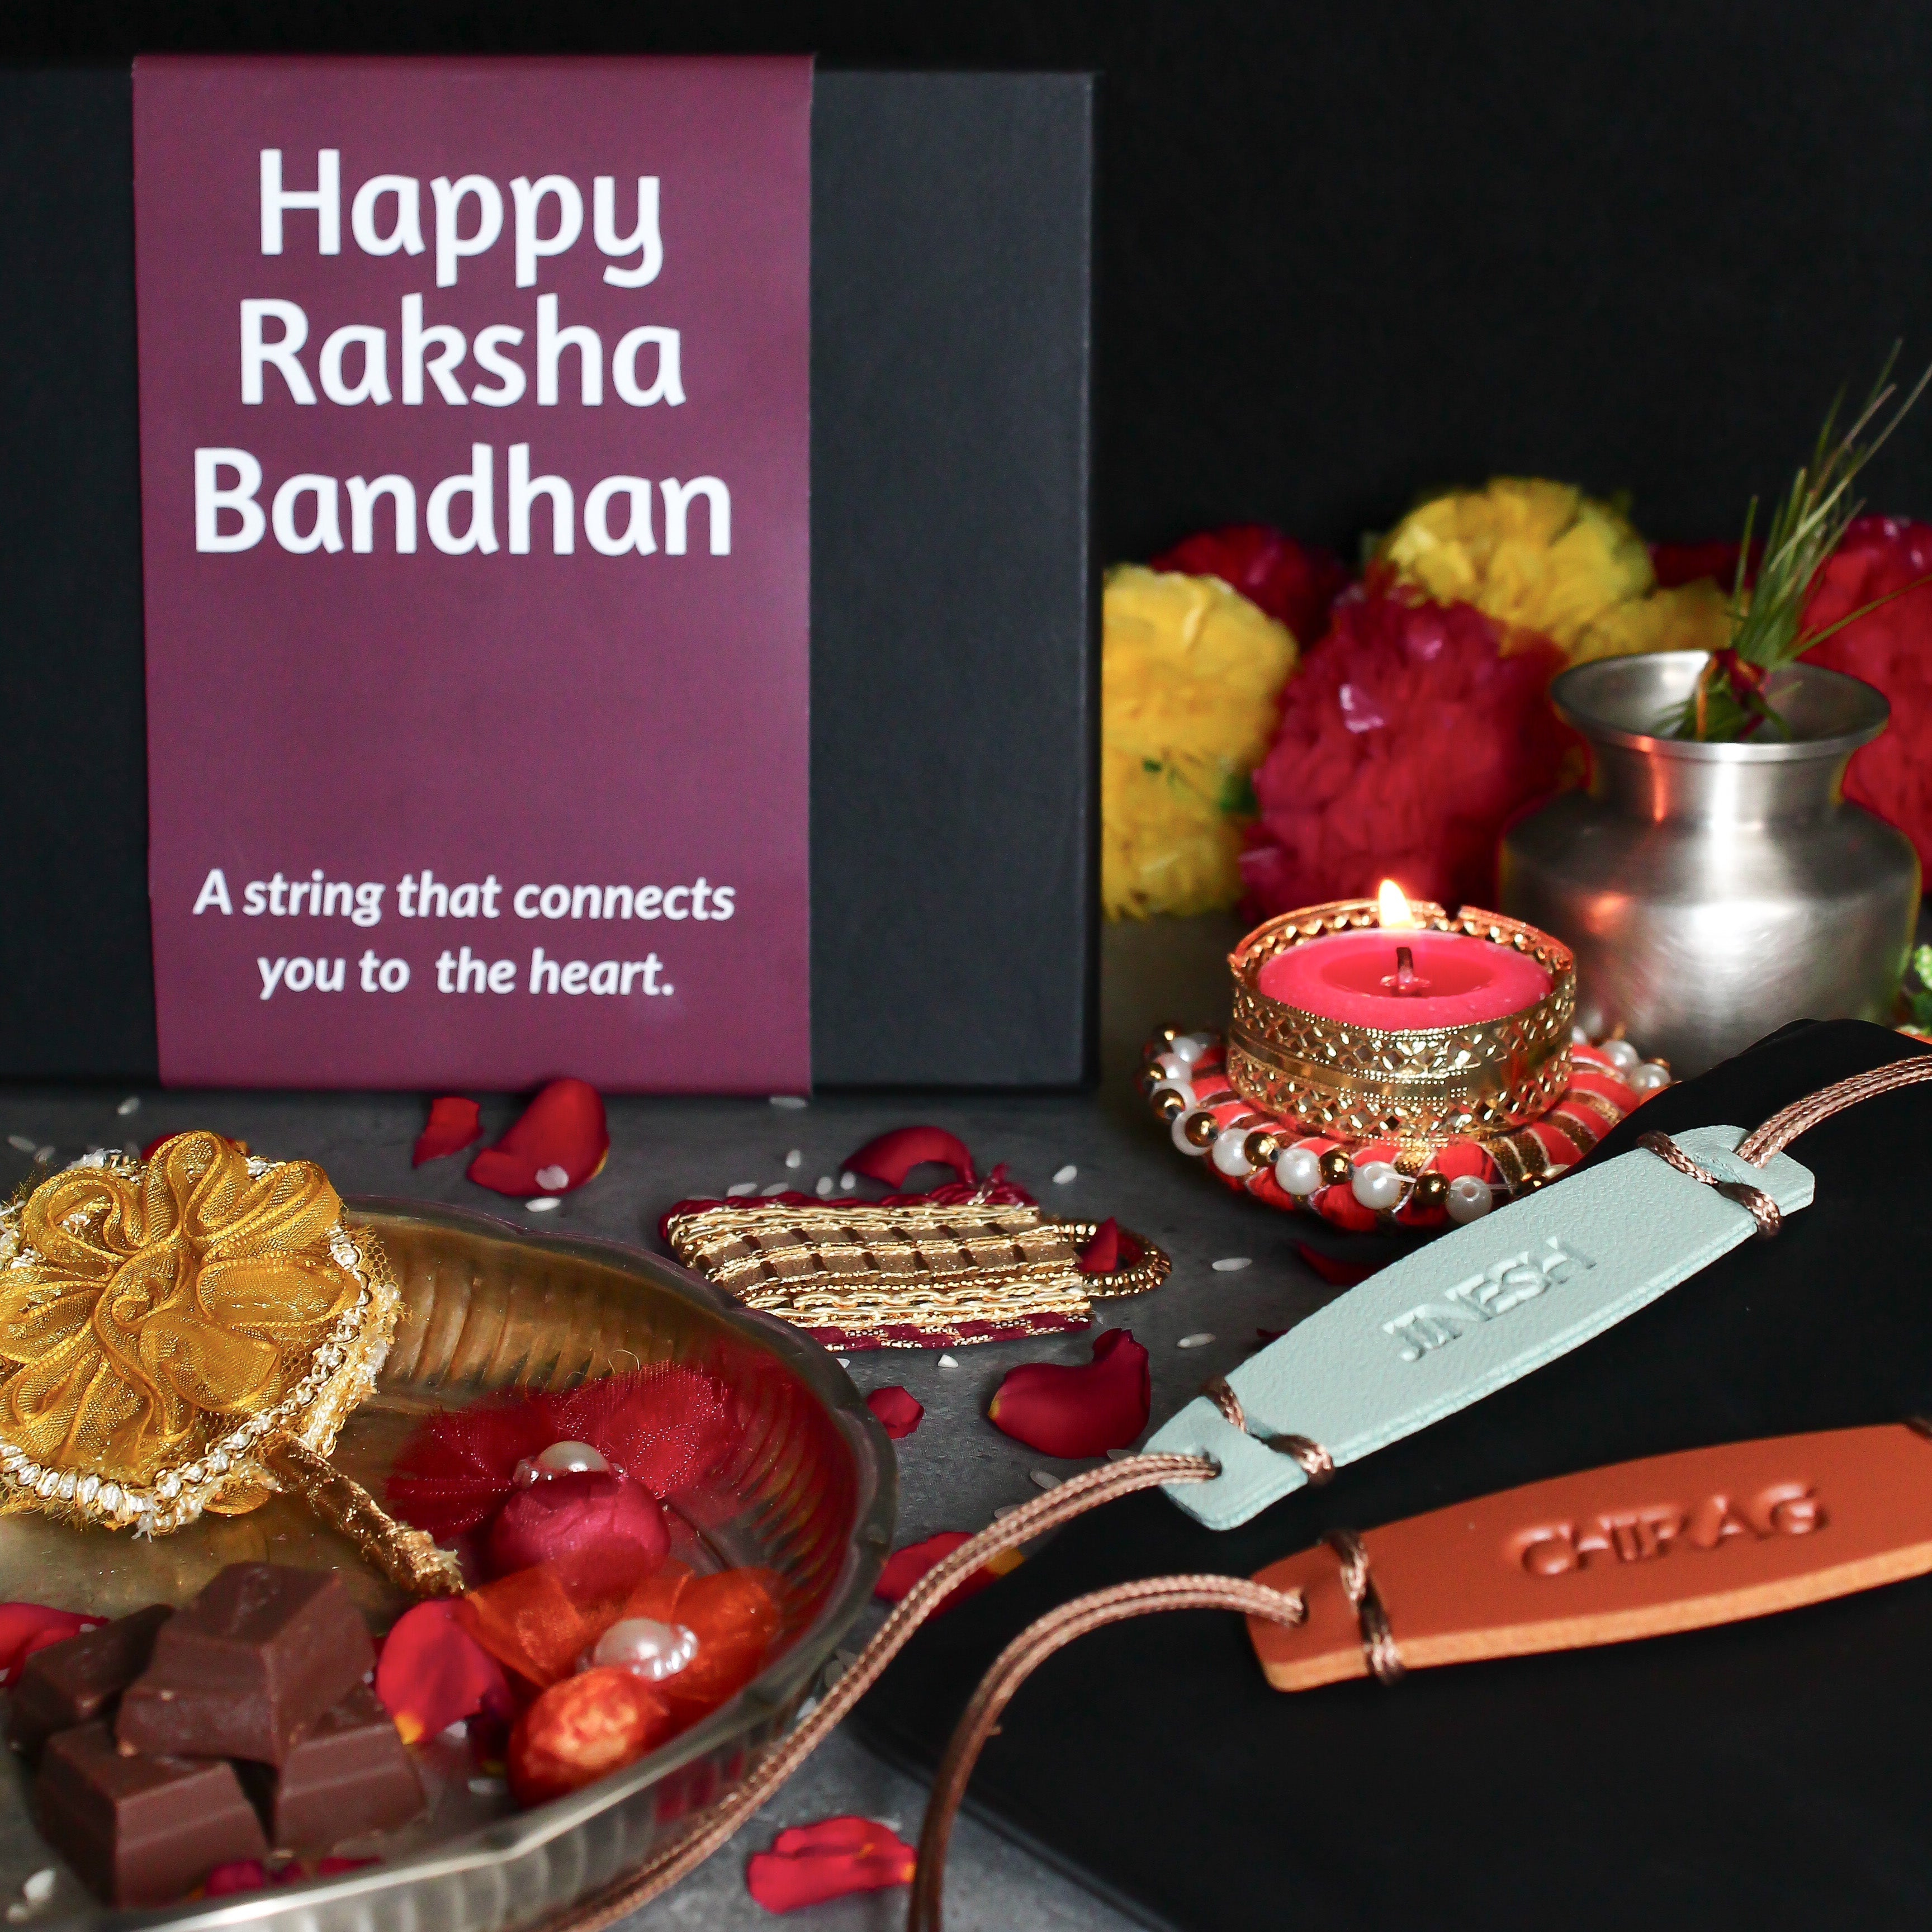 Buy personalized rakhi gifts, rakhi hampers, best gifts for rakhi